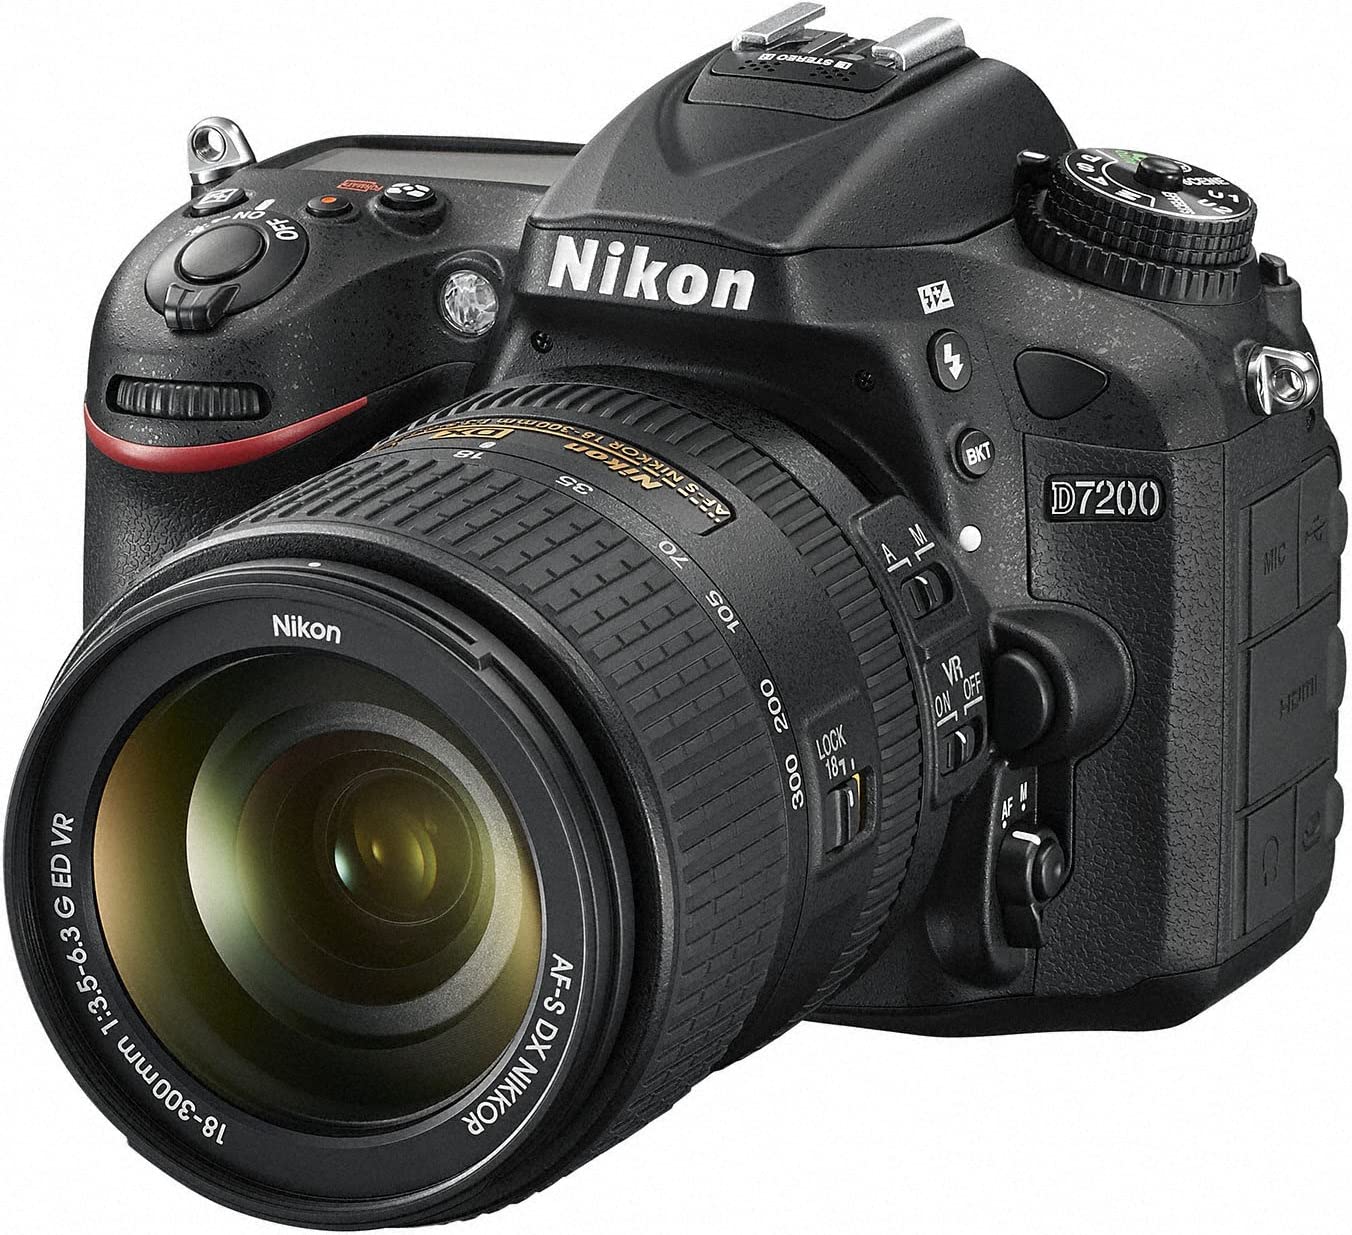 Nikon DSLR camera D7200 18-300VR lens kit D7200LK18-300 [International Version, No Warranty]